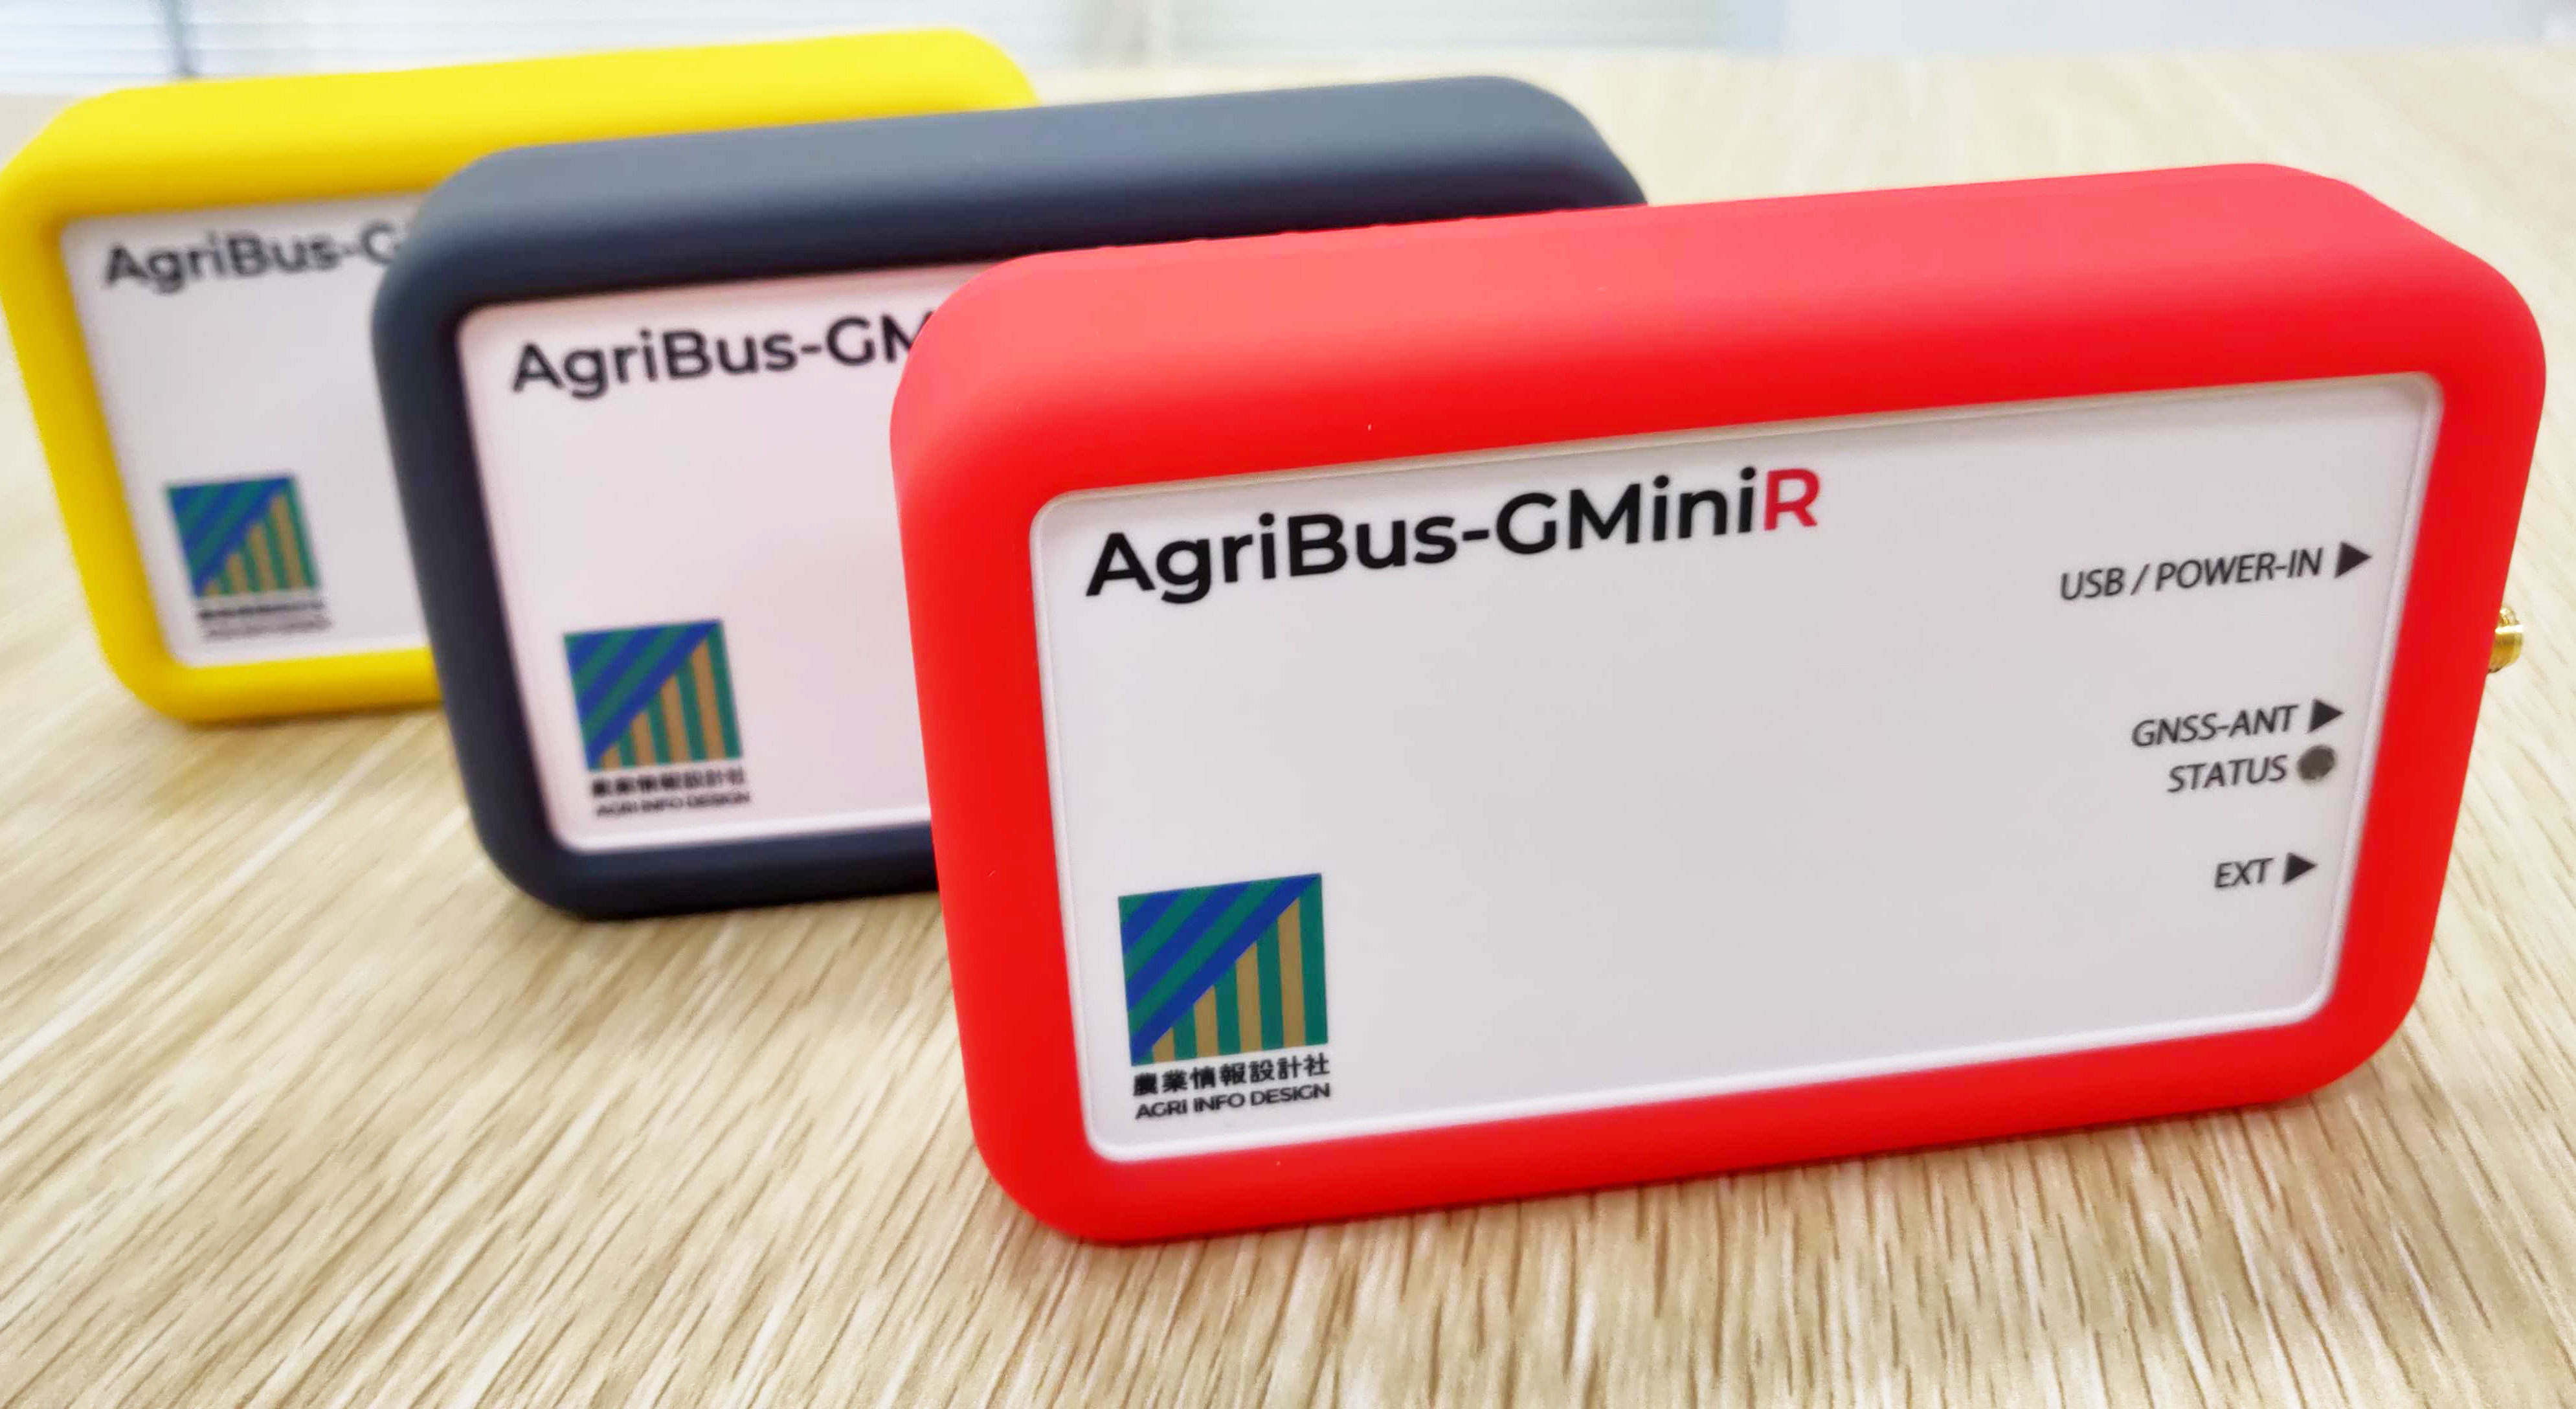 AgriBus-GMiniR